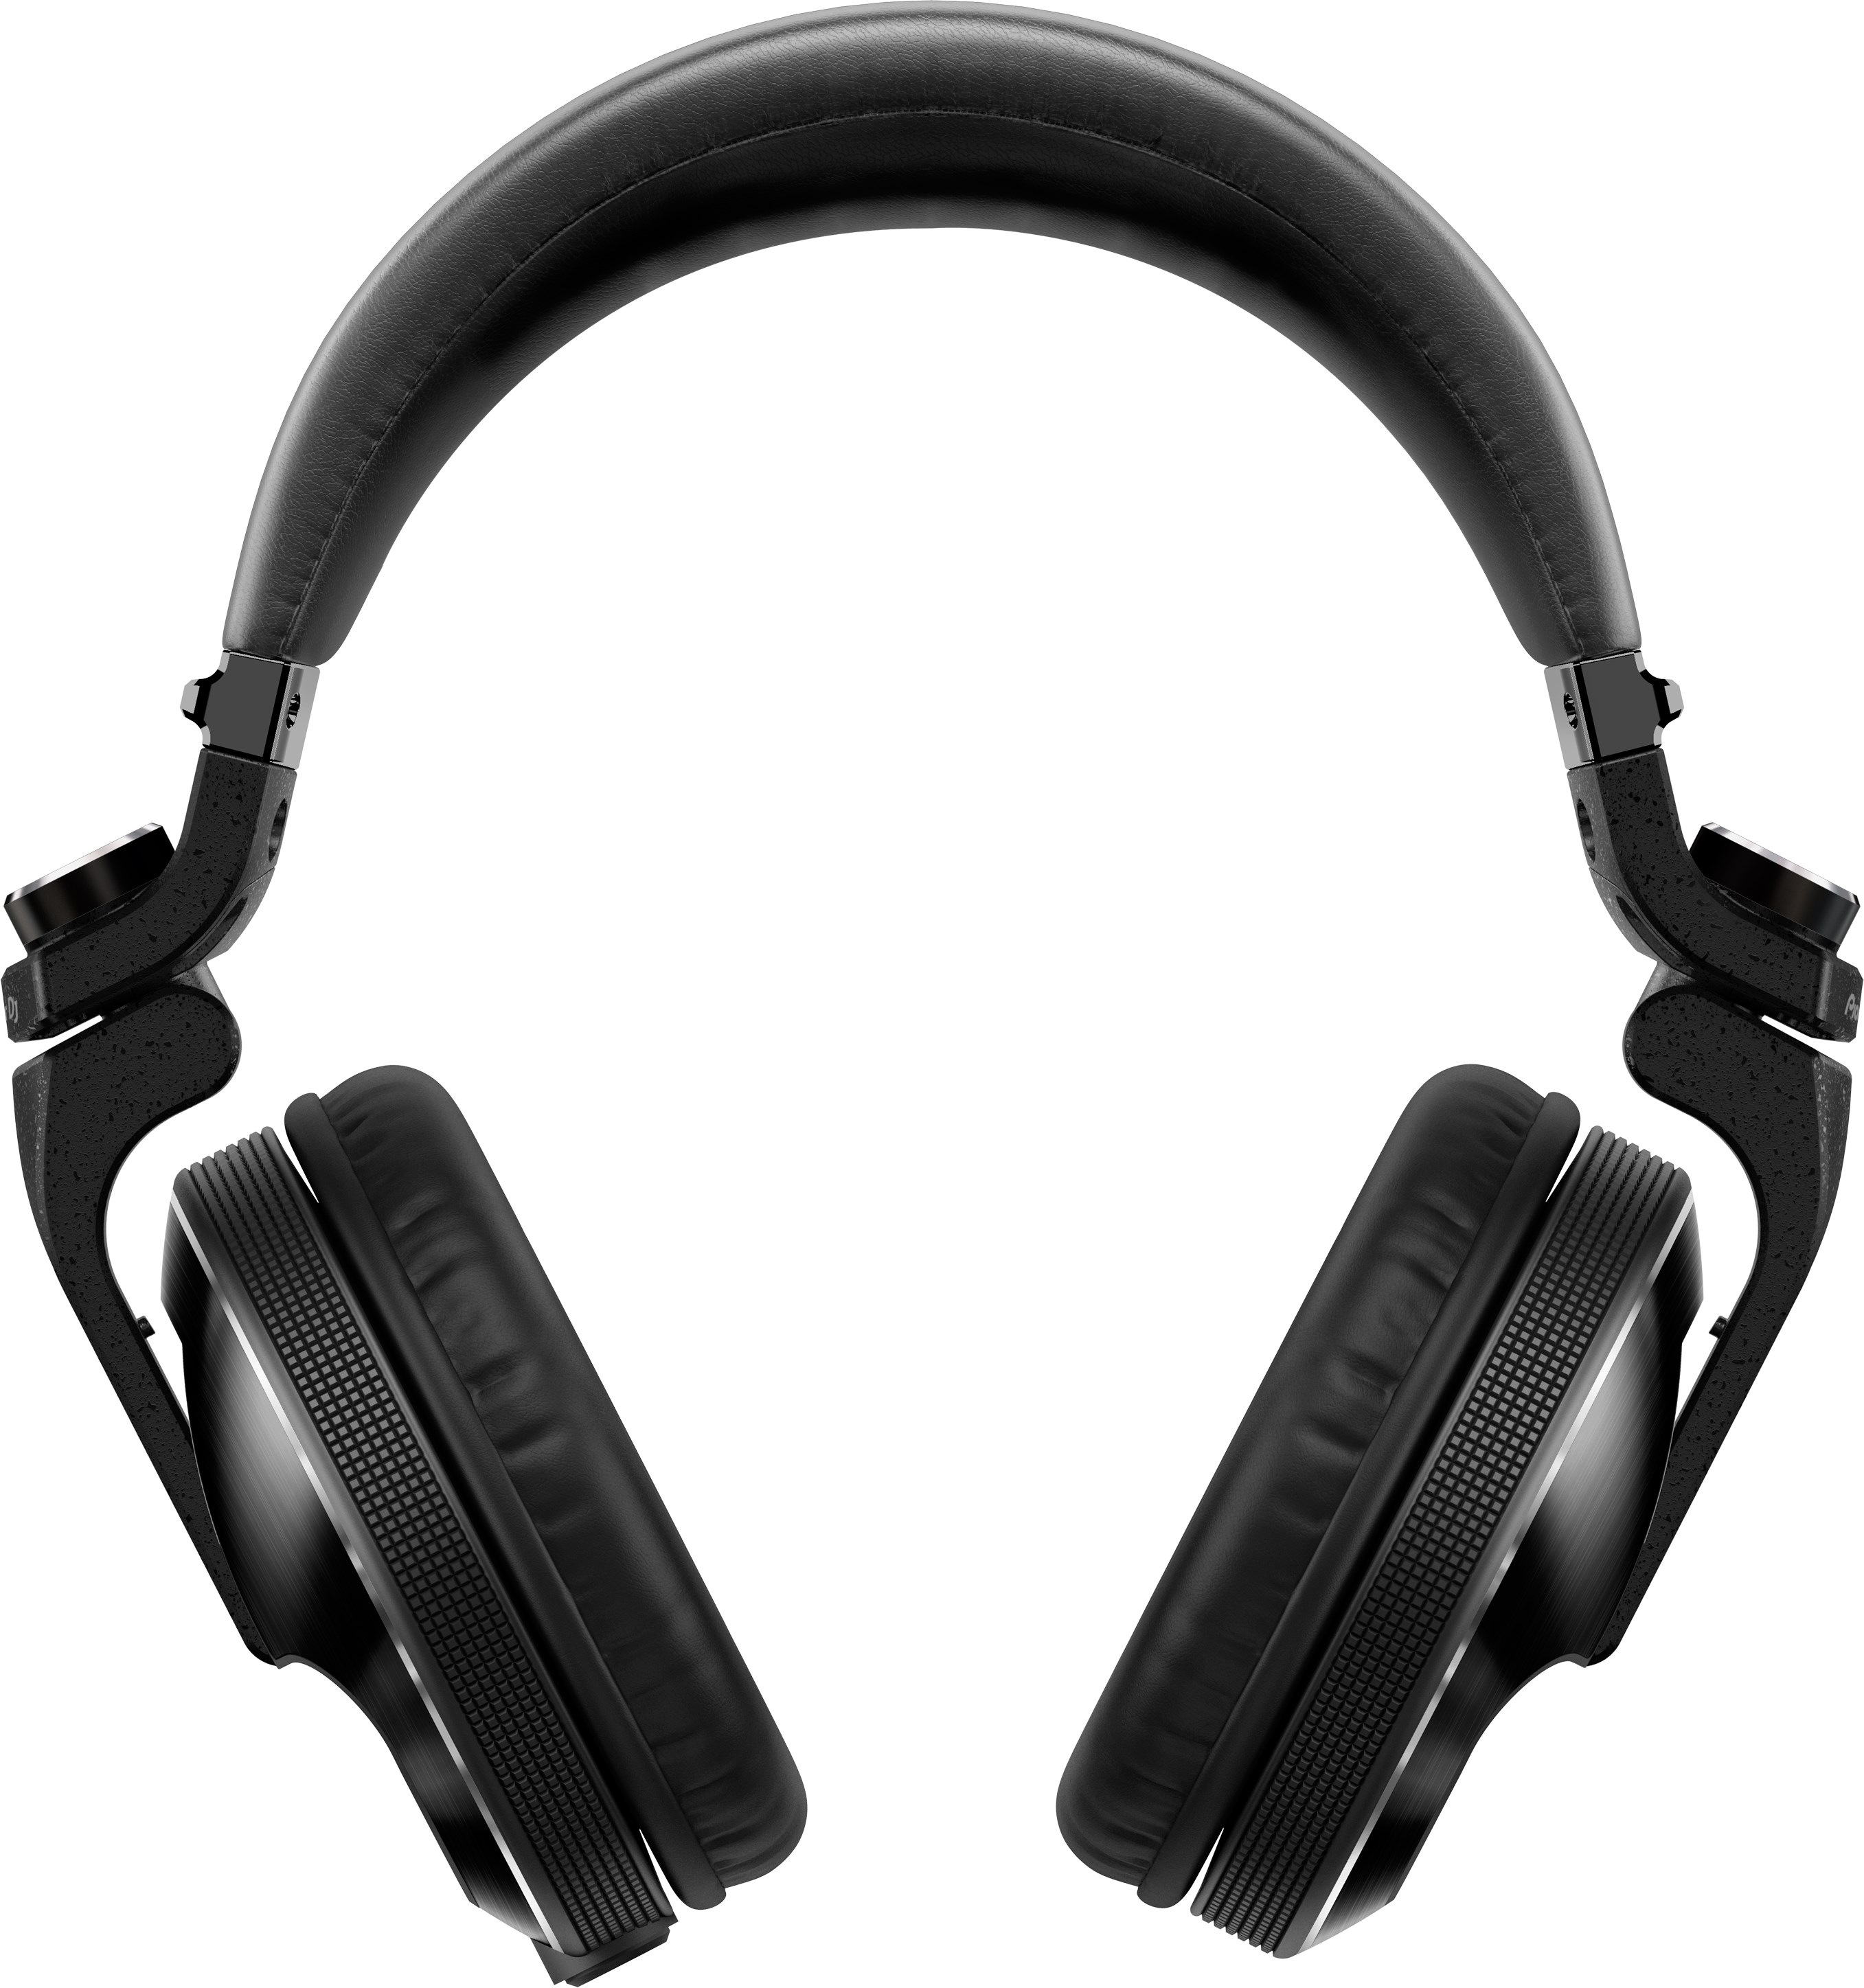 Tai nghe (Headphones DJ) Chuyên Nghiệp HDJ-X10 (Pioneer DJ) - Hàng Chính Hãng